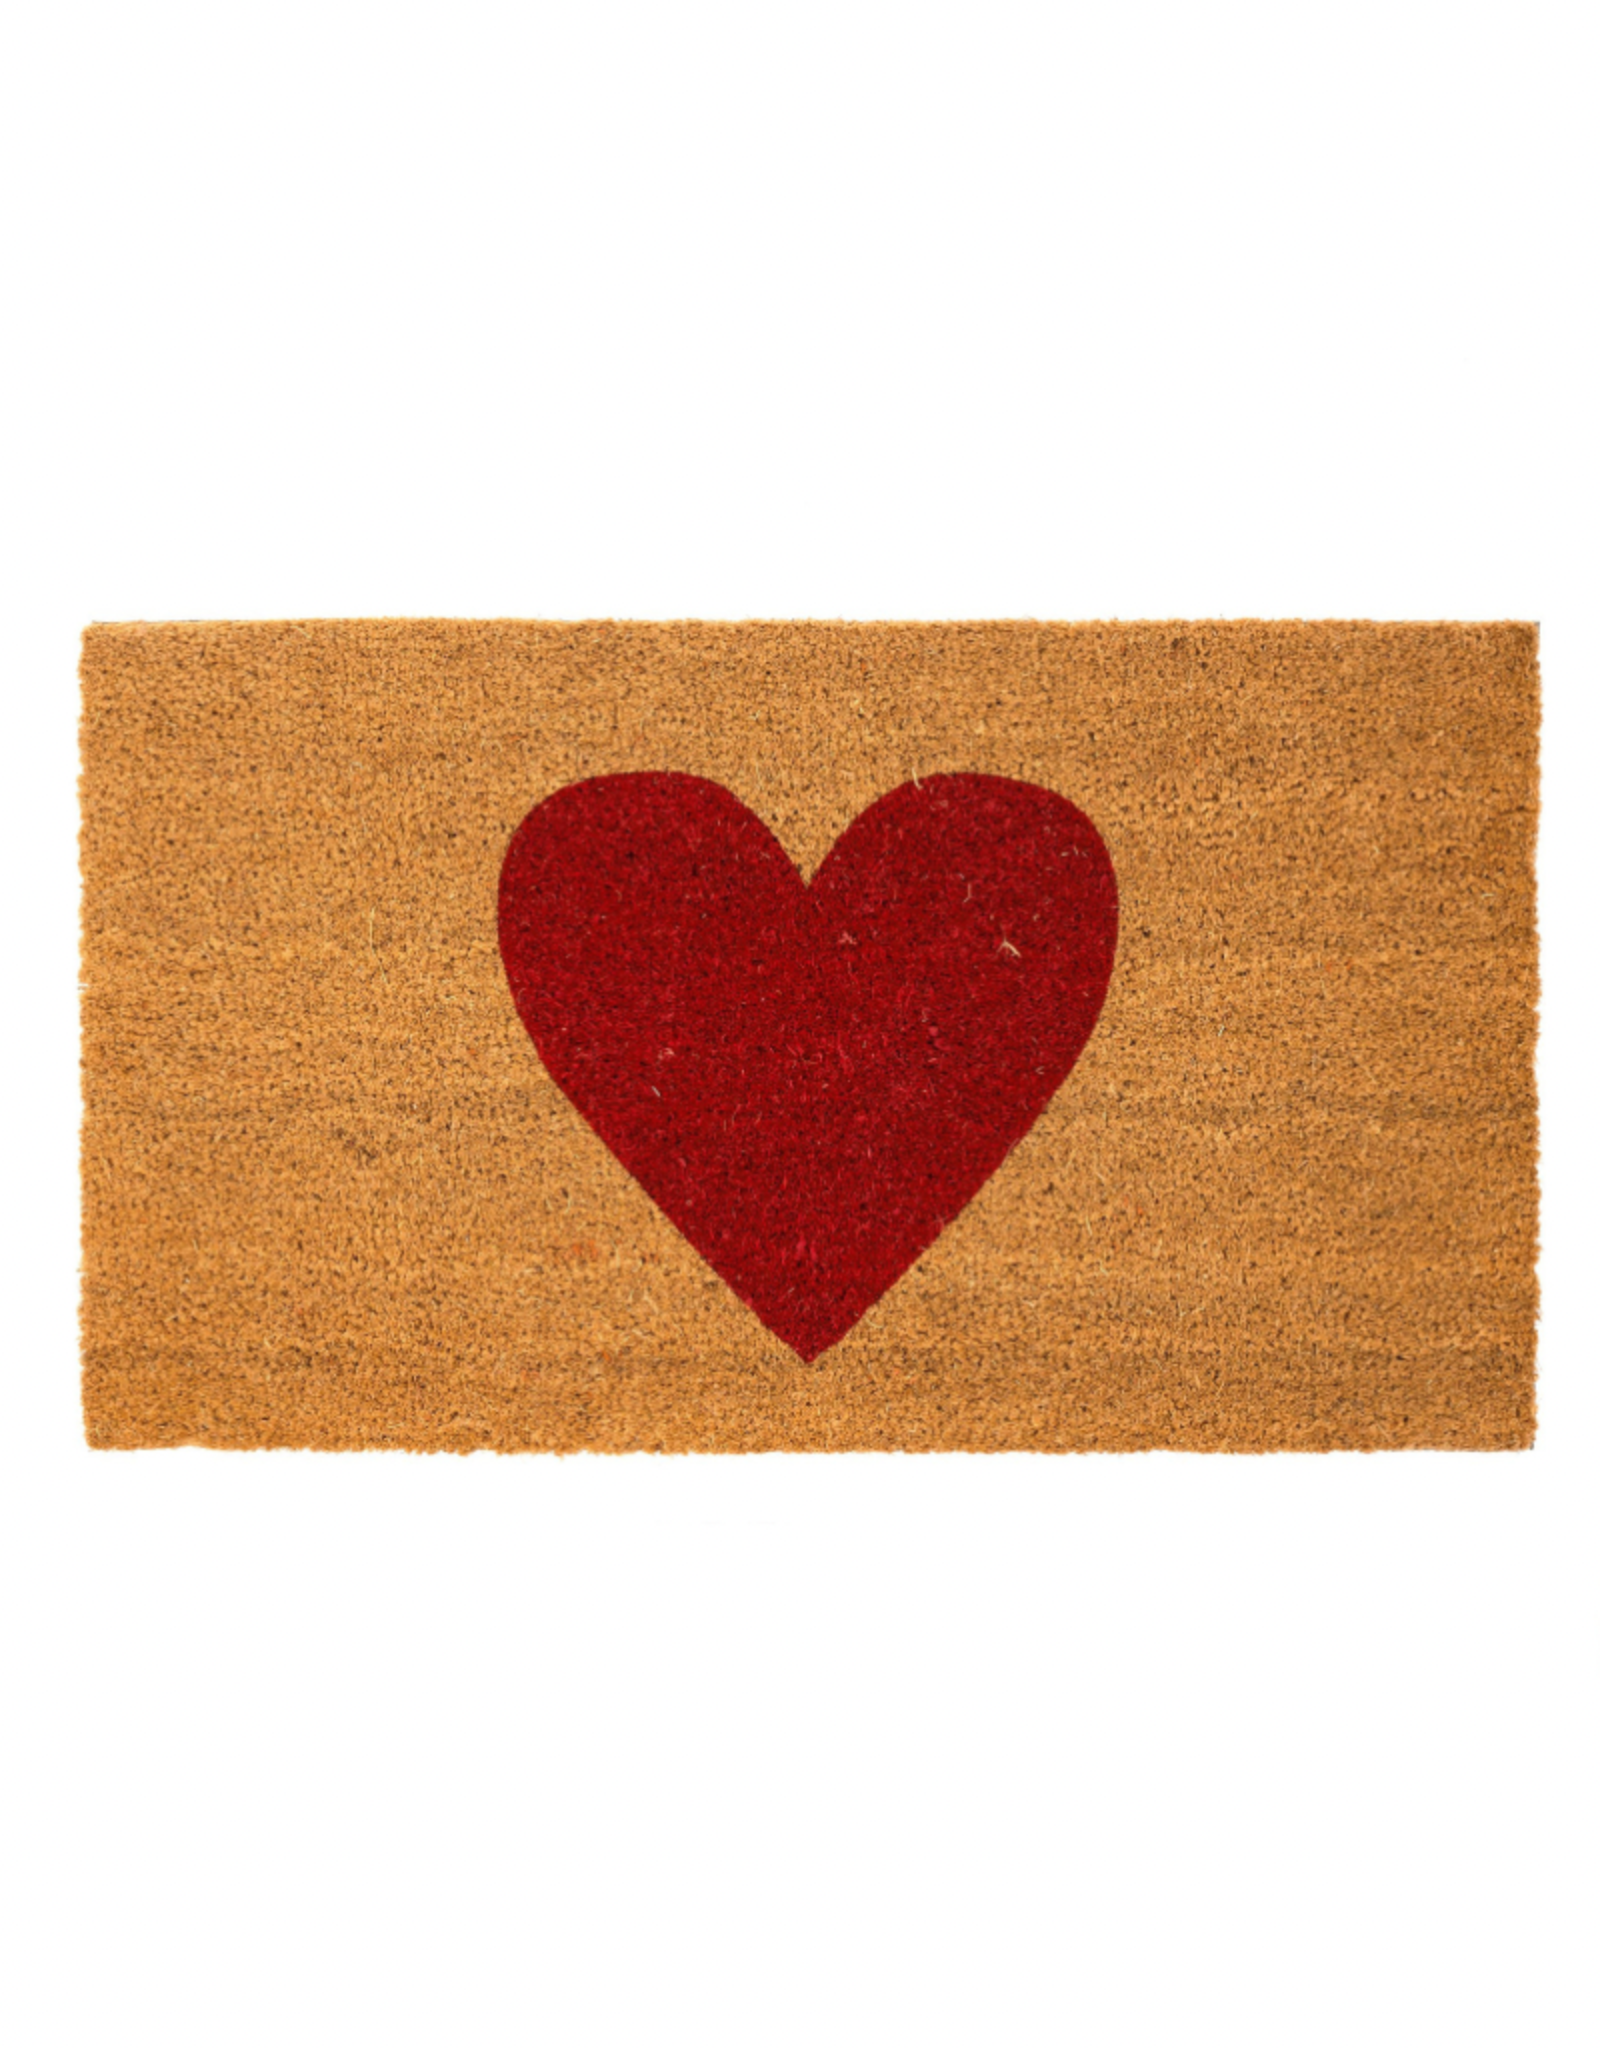 Indaba Doormat Indaba Red Heart 1-6931